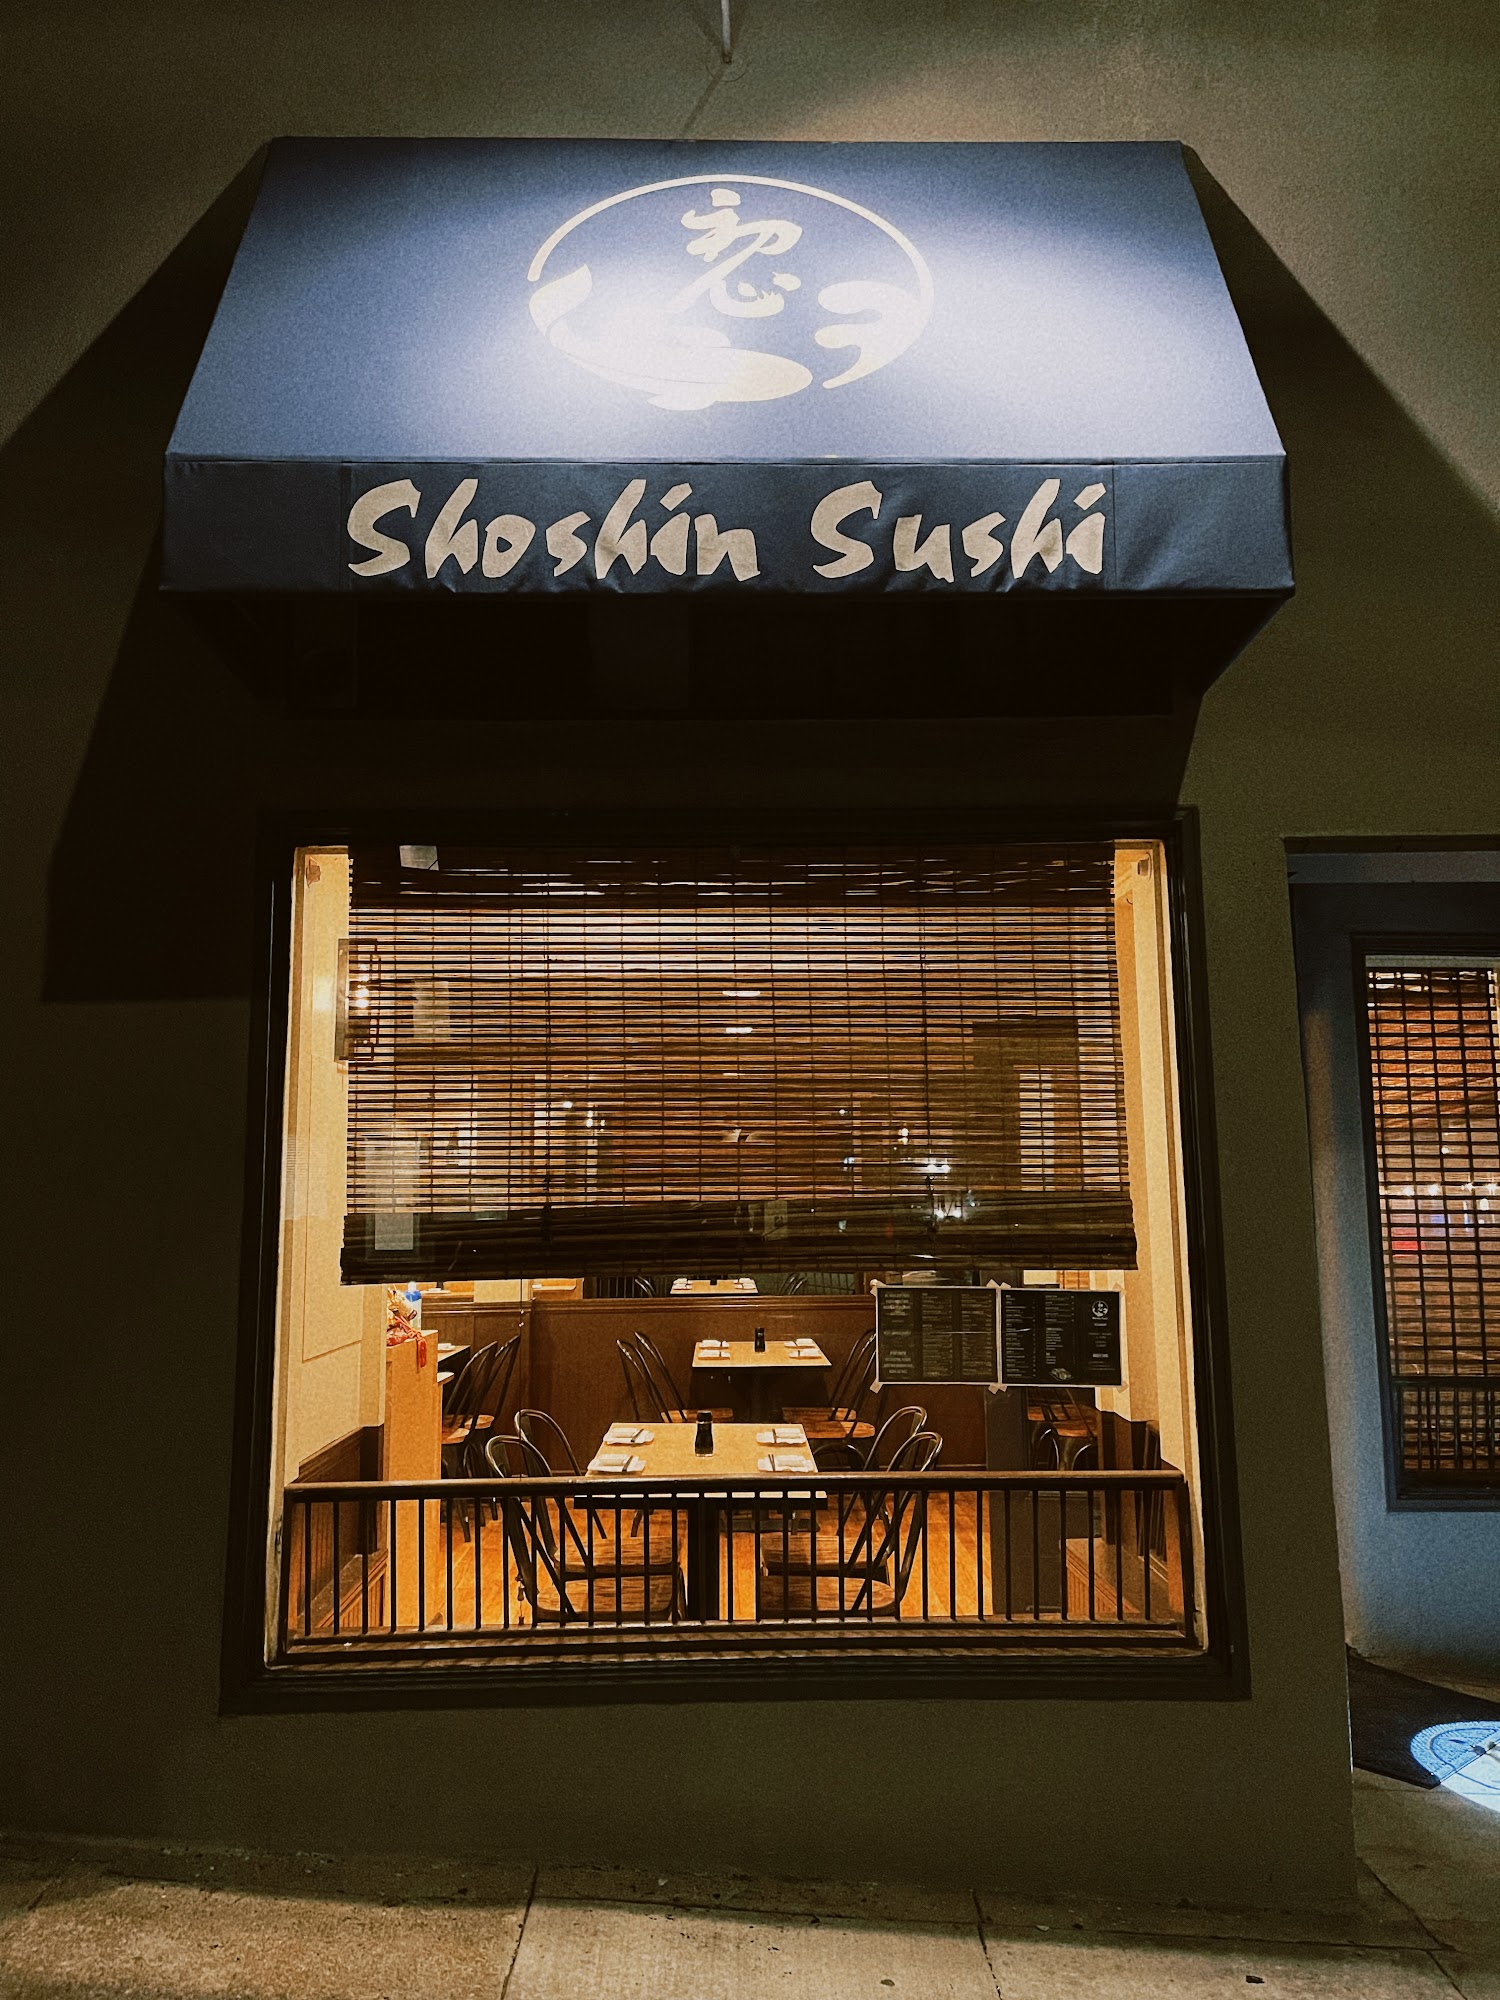 Shoshin Sushi